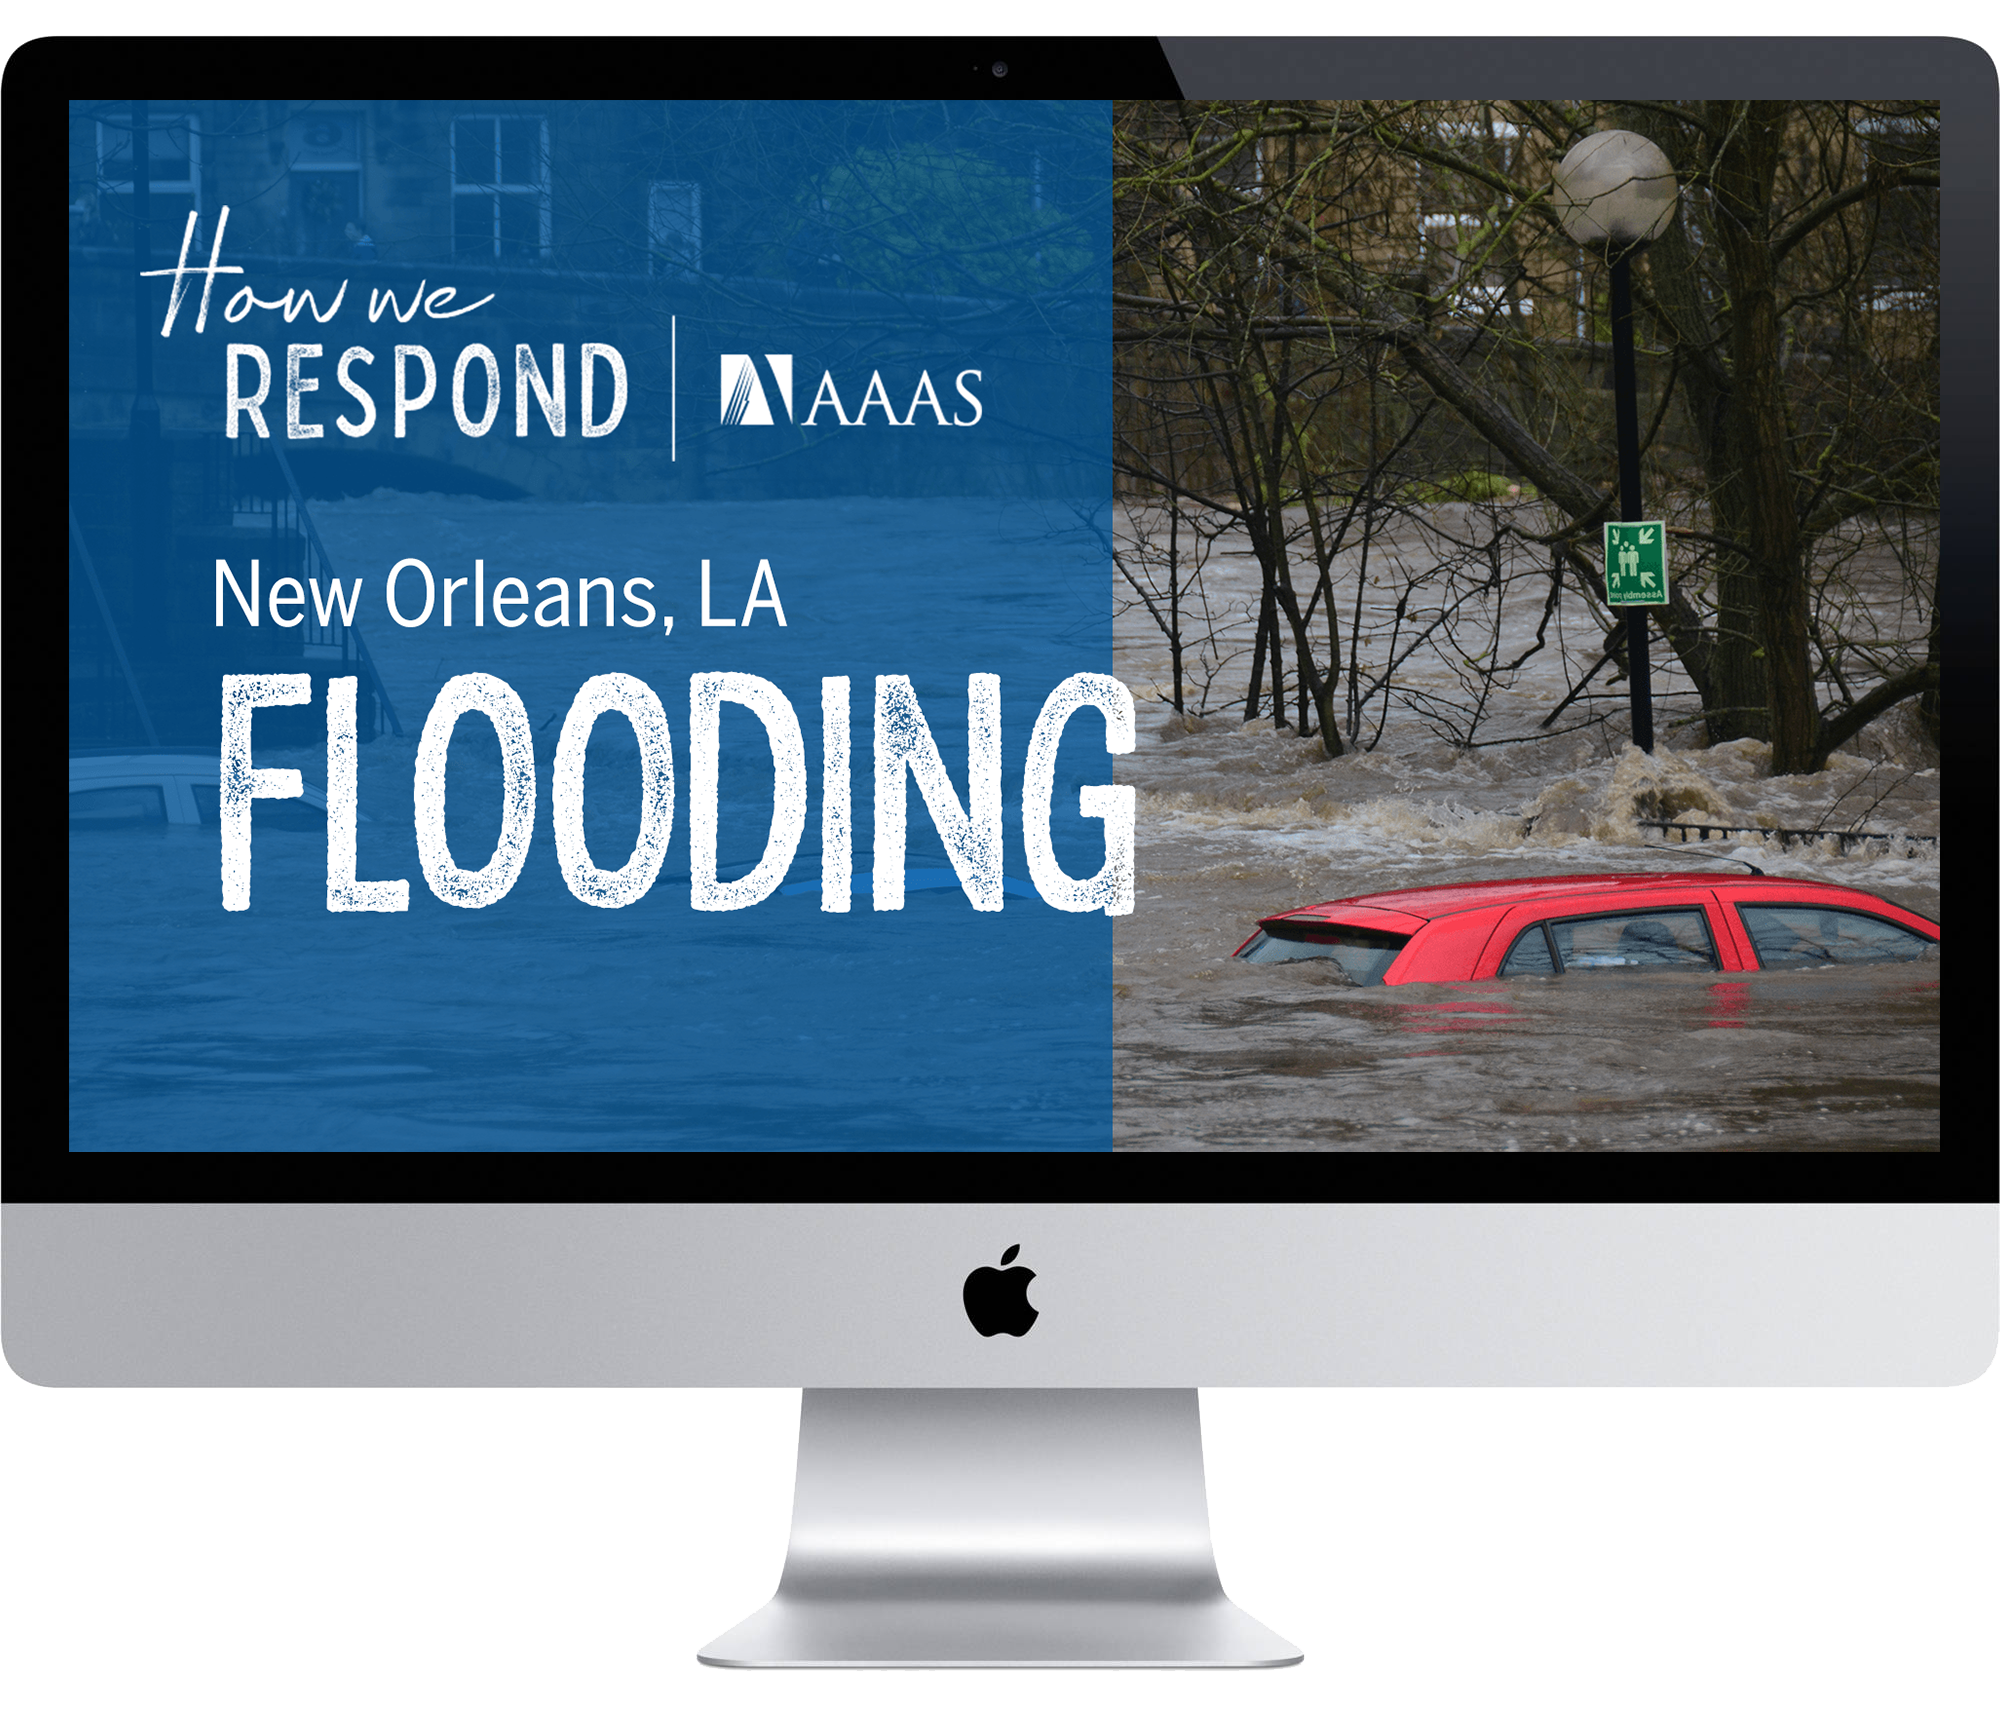 New Orleans, LA - Flooding